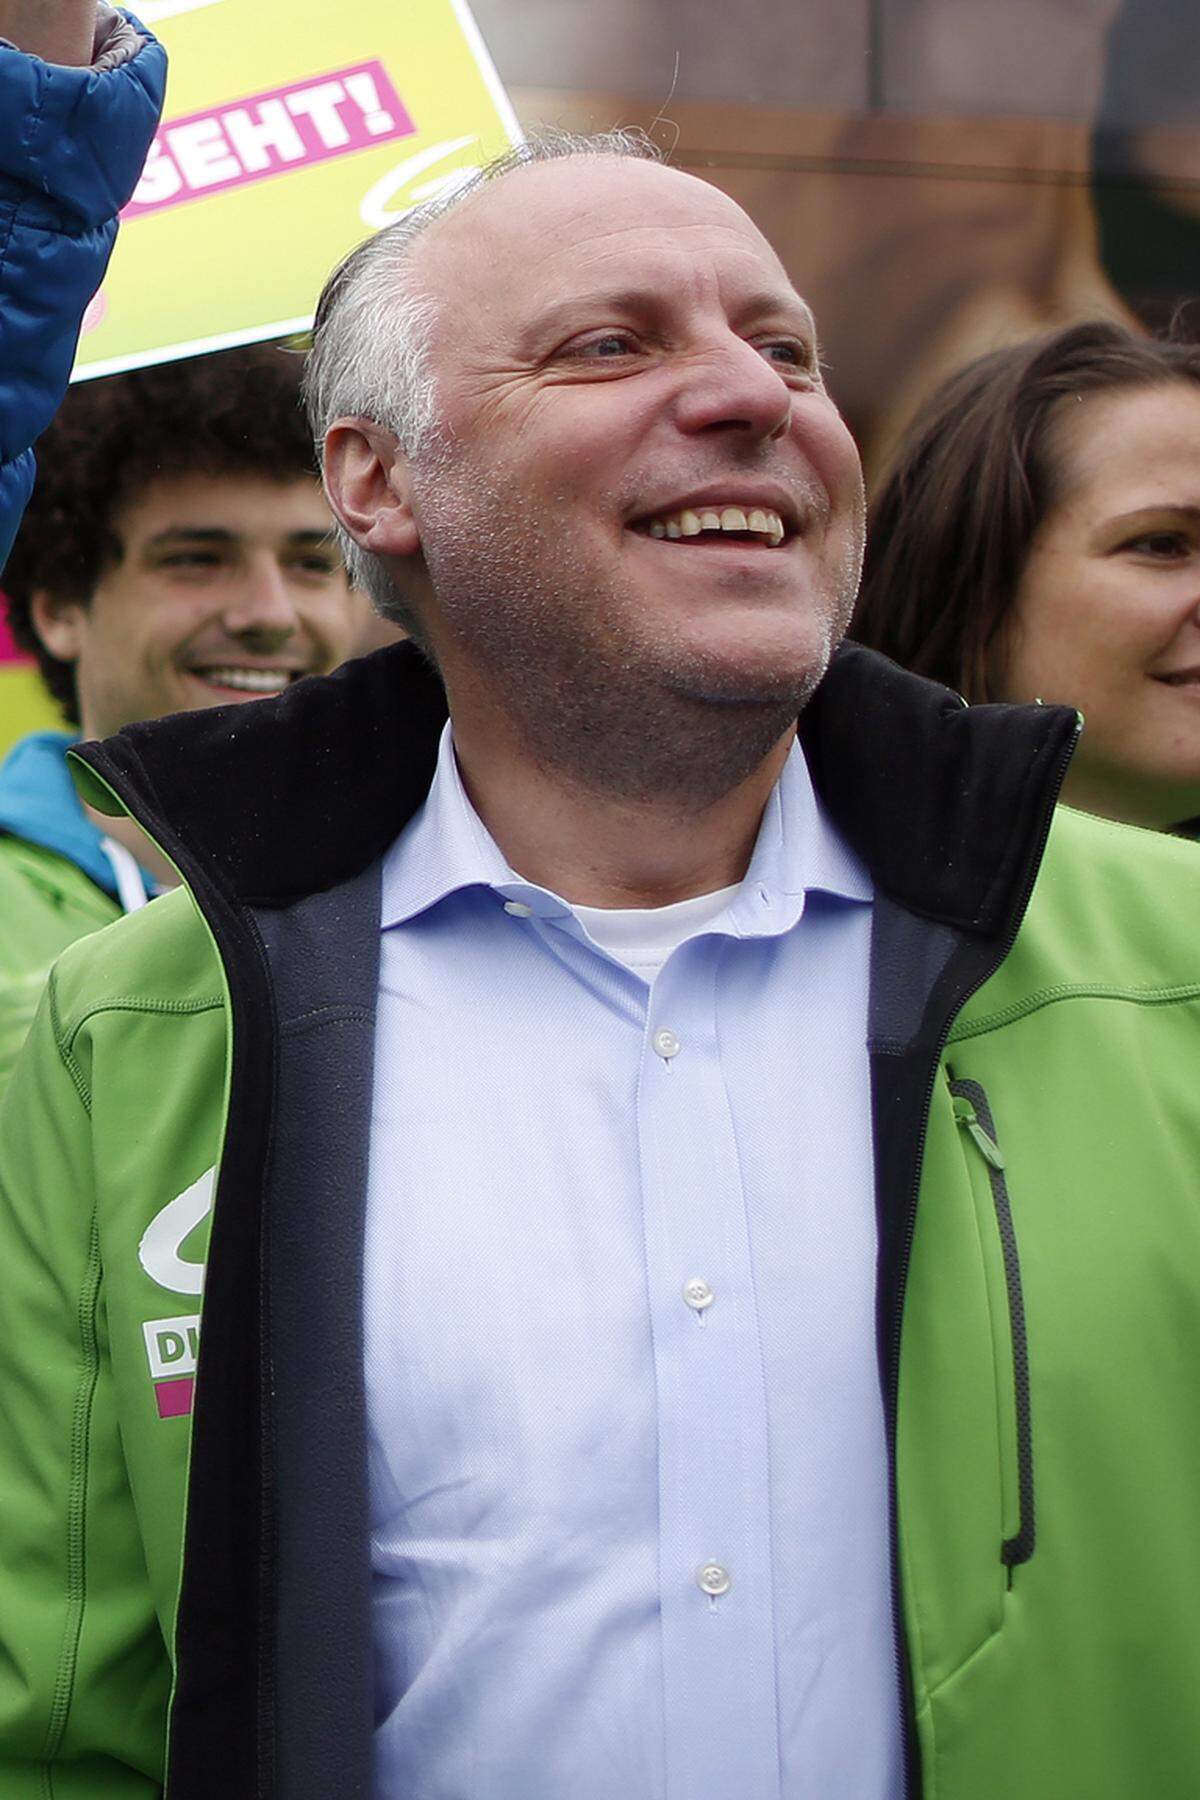 Der Grüne Bundesgeschäftsführer Stefan Wallner freute sich über den "Riesenerfolg" und erwartet das historisch beste Bundeswahlergebnis seiner Partei. Ein drittes Mandat zu erreichen, sei das Traumziel in diesem Wahlkampf gewesen.